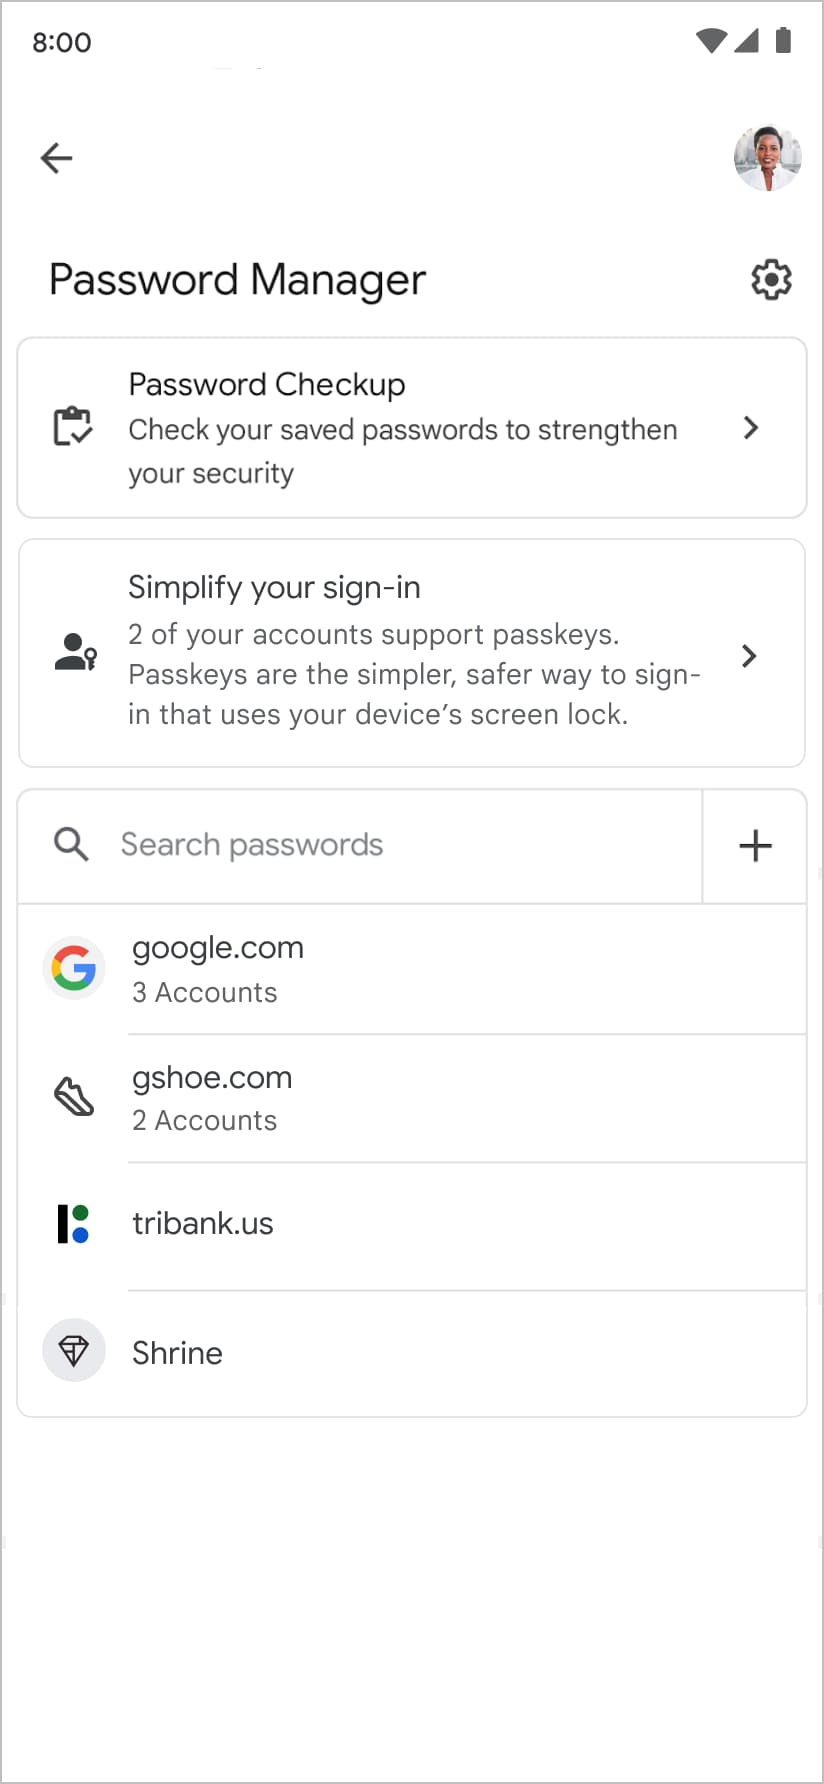 Trình quản lý mật khẩu của Google đề xuất người dùng tạo khoá truy cập khi xem lại danh sách mật khẩu và khoá truy cập hiện có của họ.